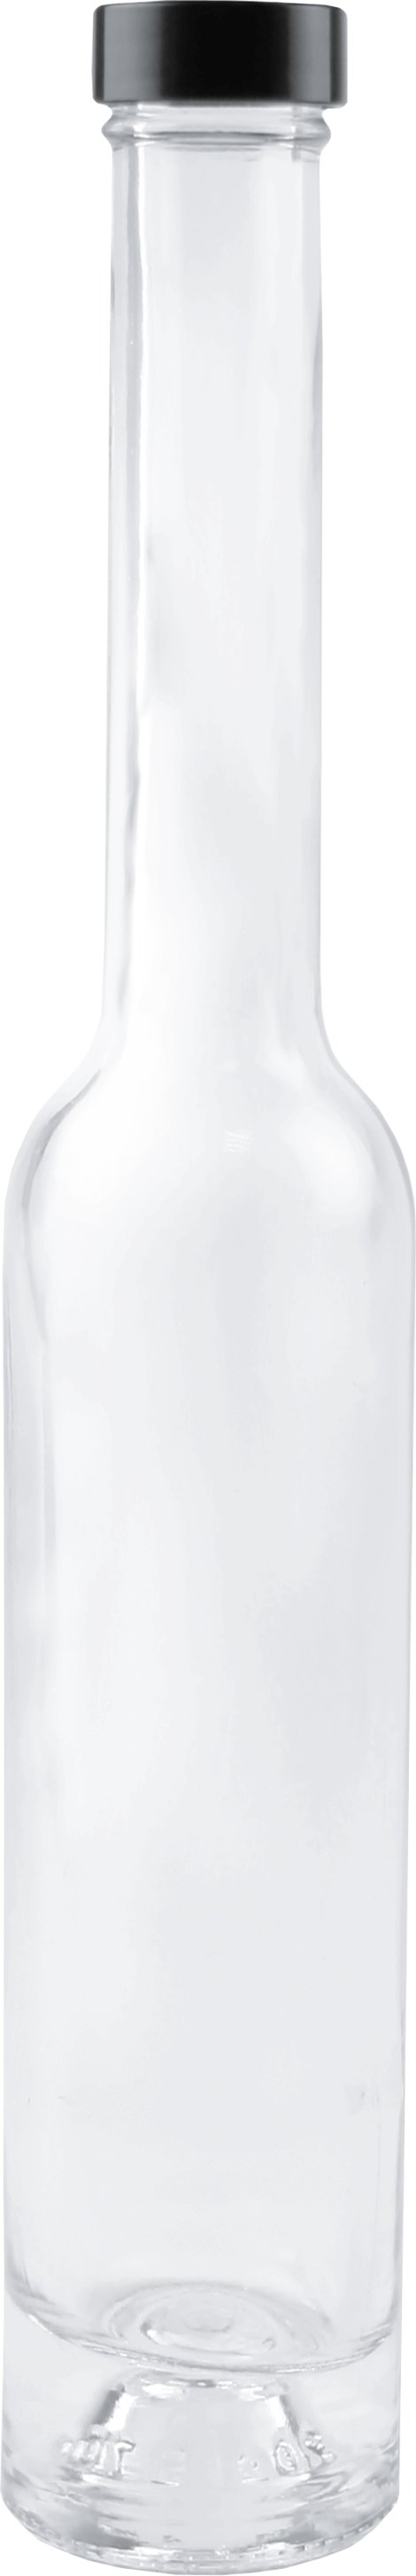 Eleganceflasche mit Schraubverschluss 200 ml